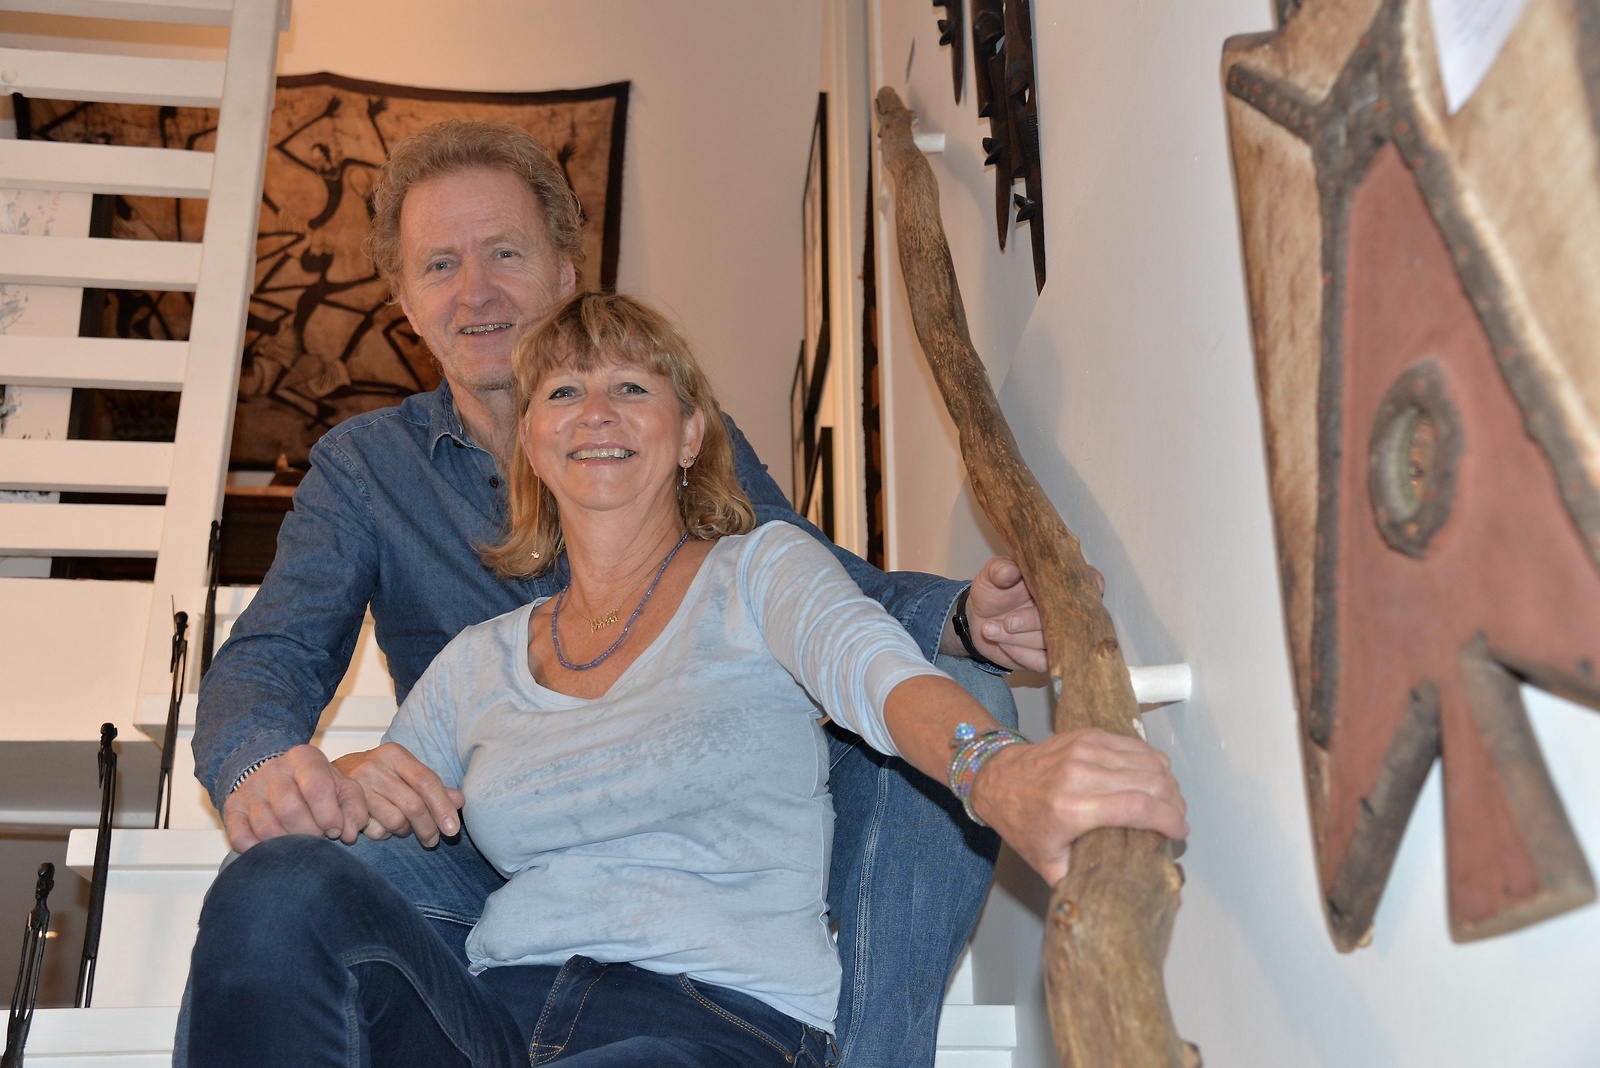 Sven Zetterlund och Linda Rasmussen tar emot gäster i sitt eget boningshus. Karibu sana! (Mycket välkomna!)Foto: Tina L Bengtsson